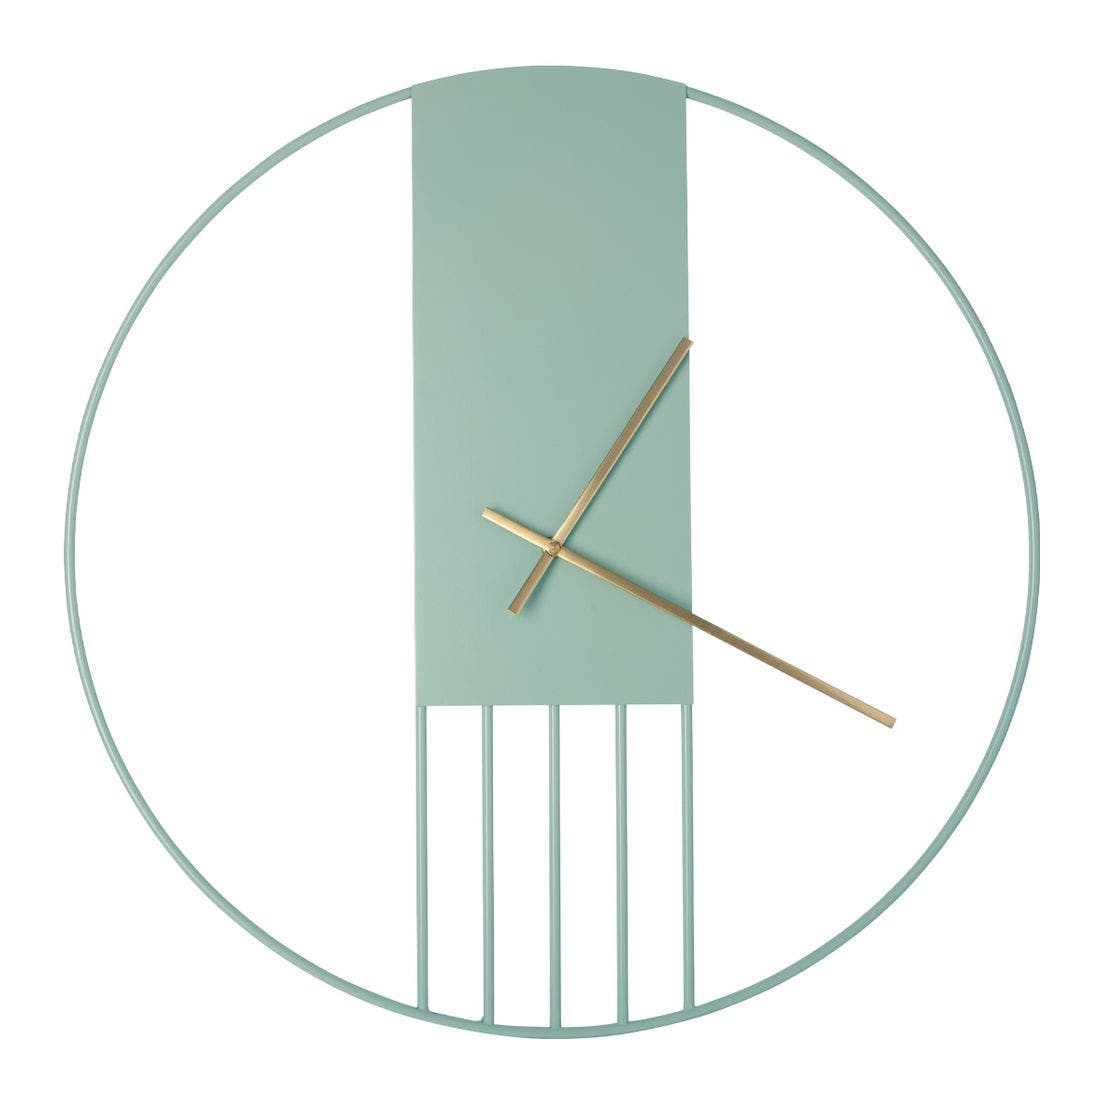 นาฬิกาผนัง Habitat รุ่น Aurelien สีเขียว2